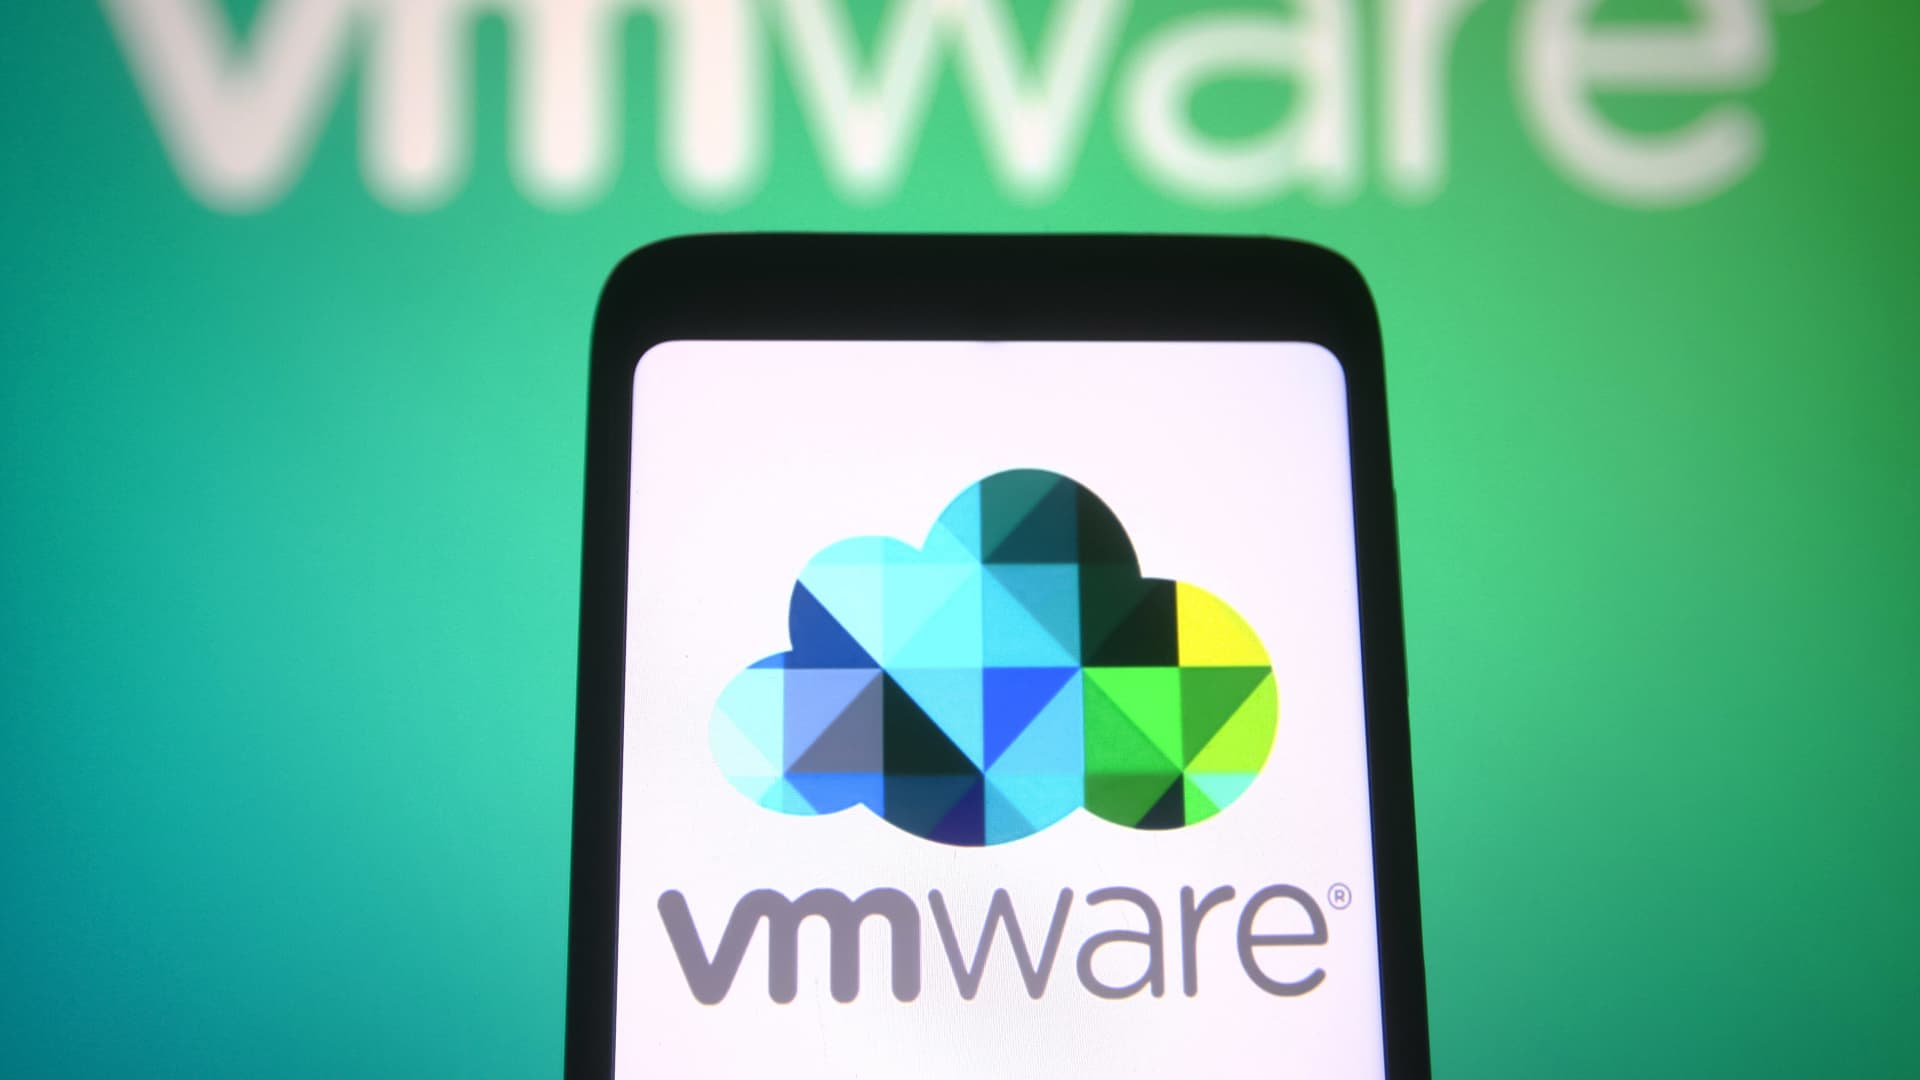 Broadcom reportedly in talks to acquire VMware